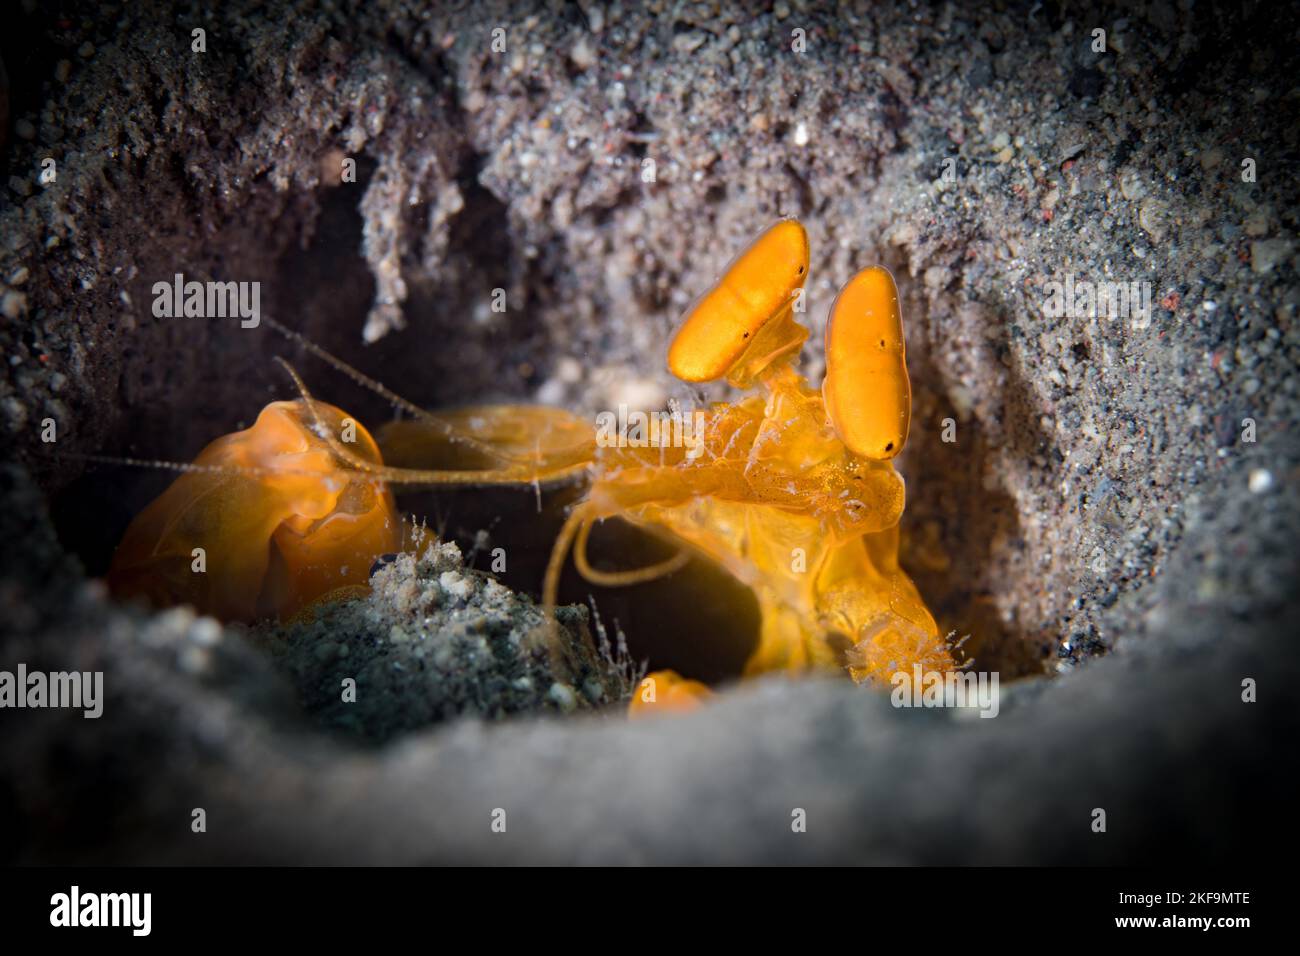 La crevette de mantis de Spearing regarde par le bord de son trou Banque D'Images